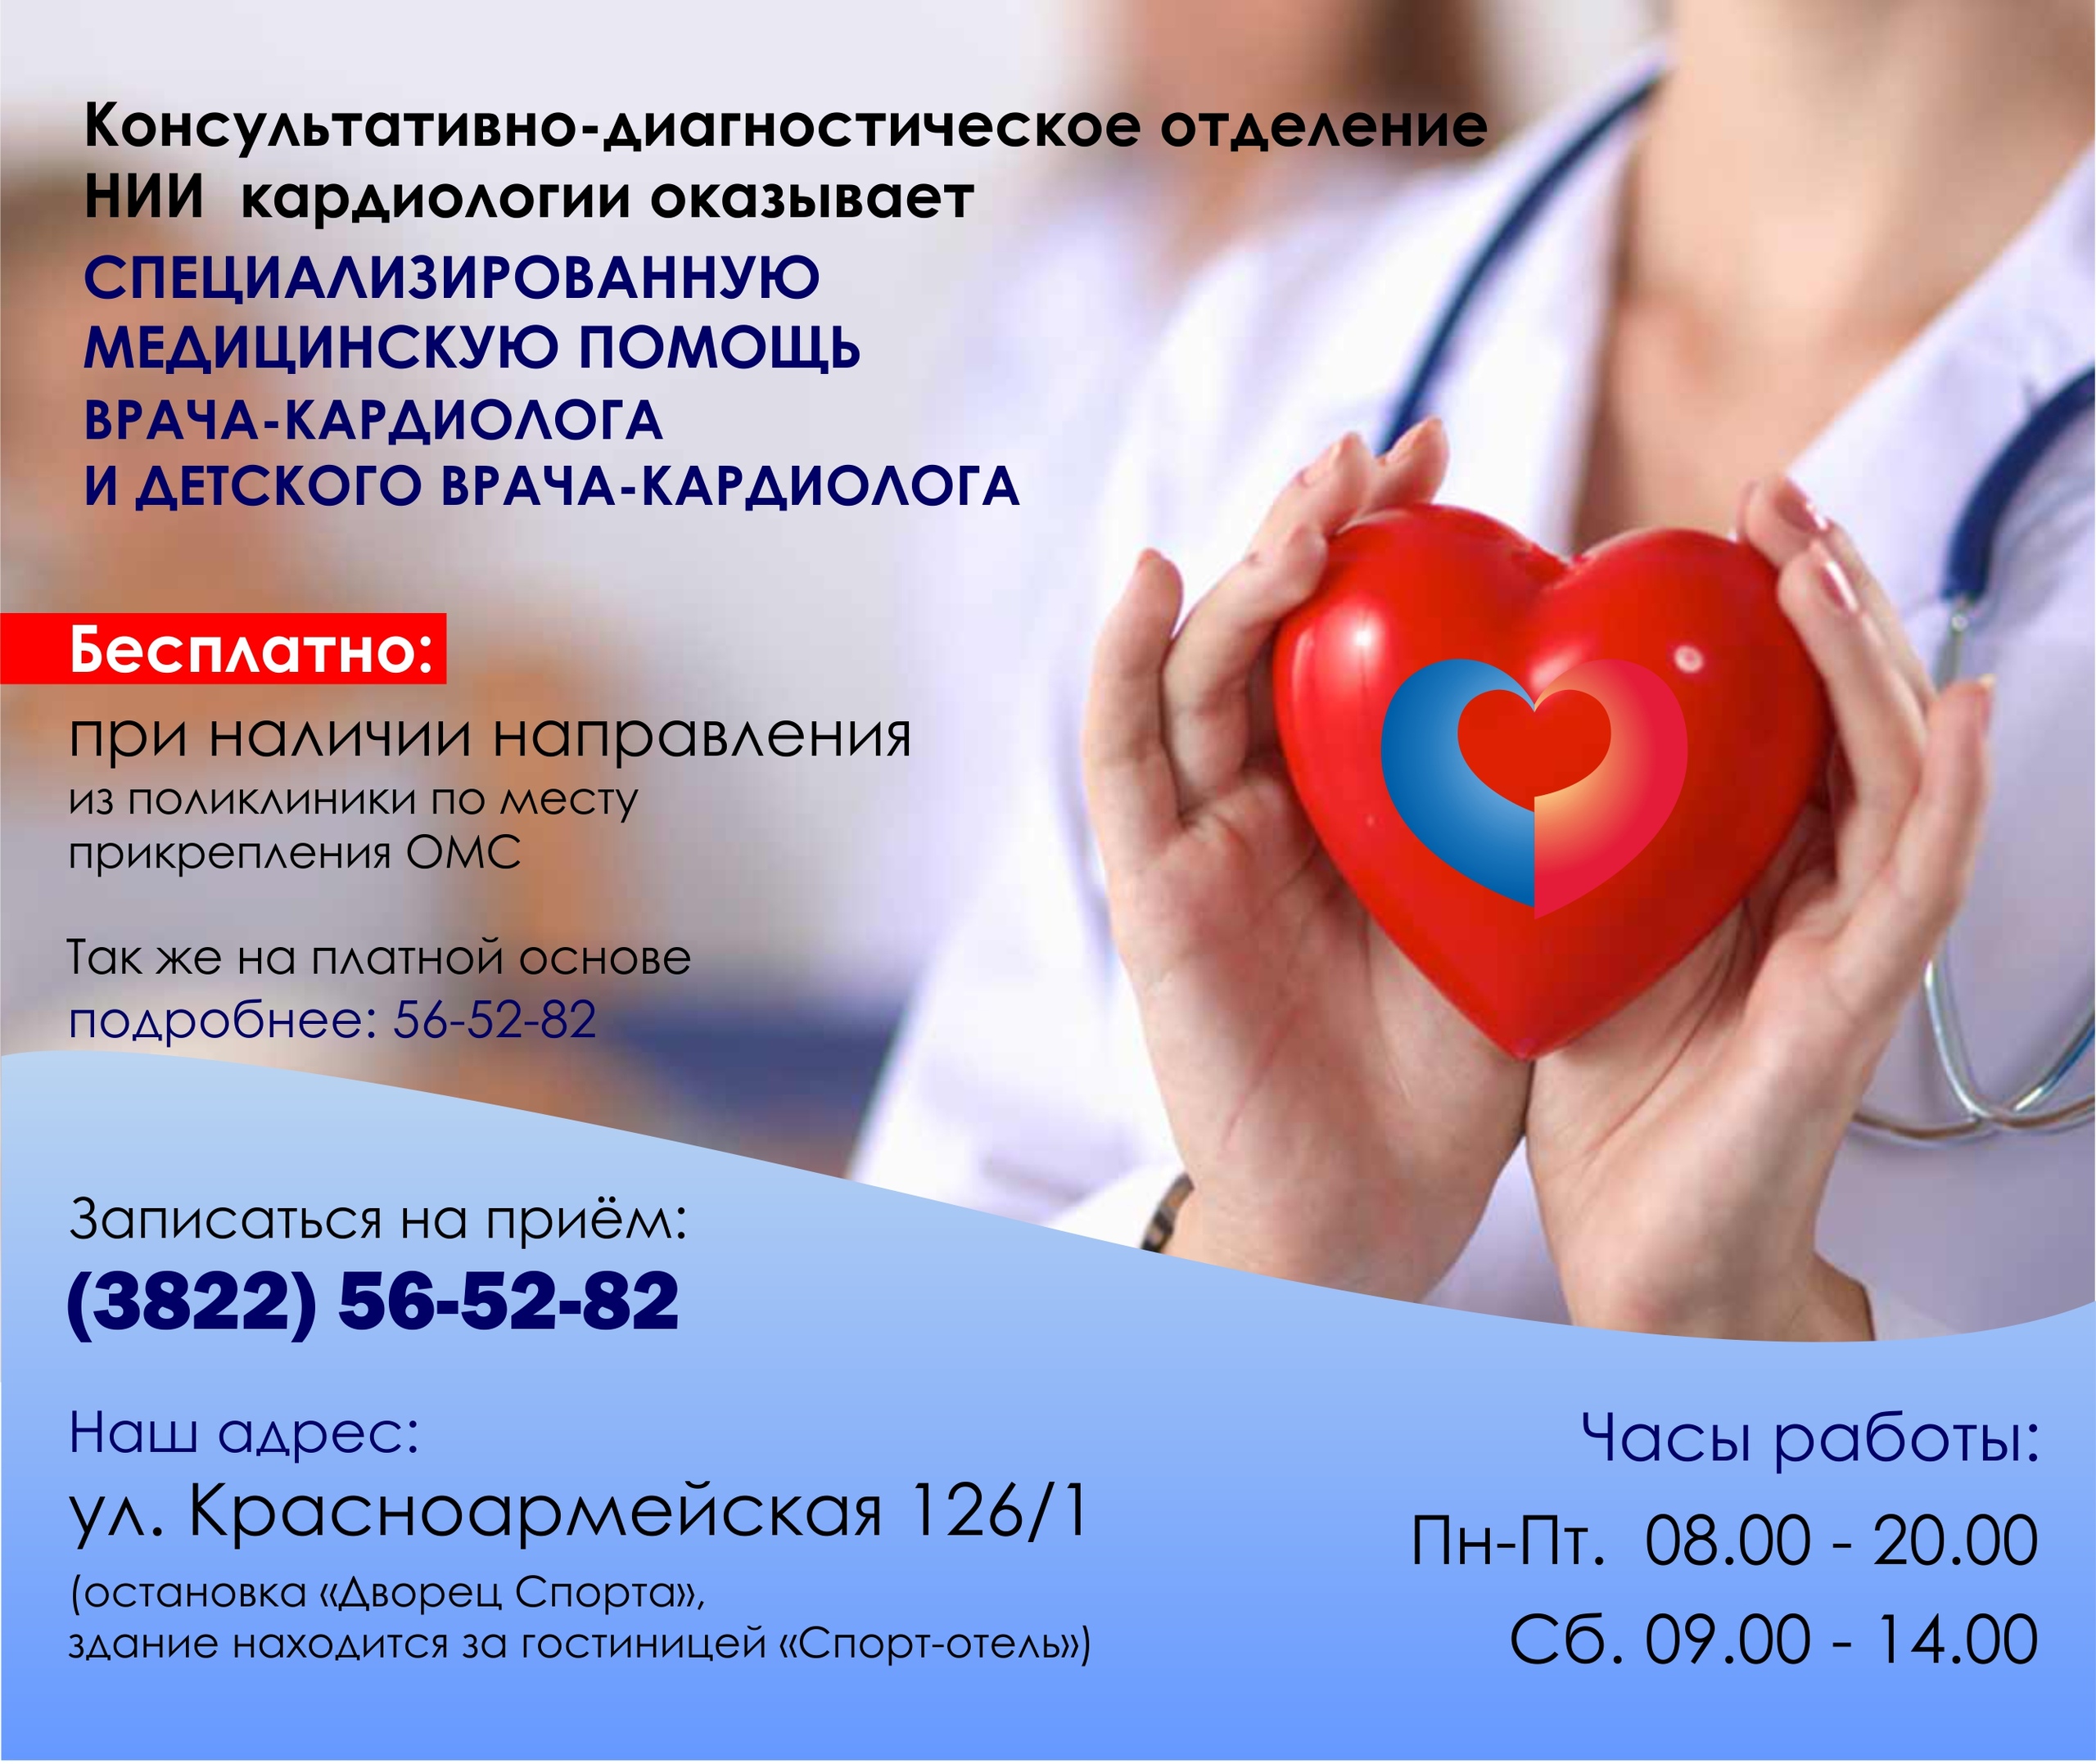 Прием врачей кардиологического центра